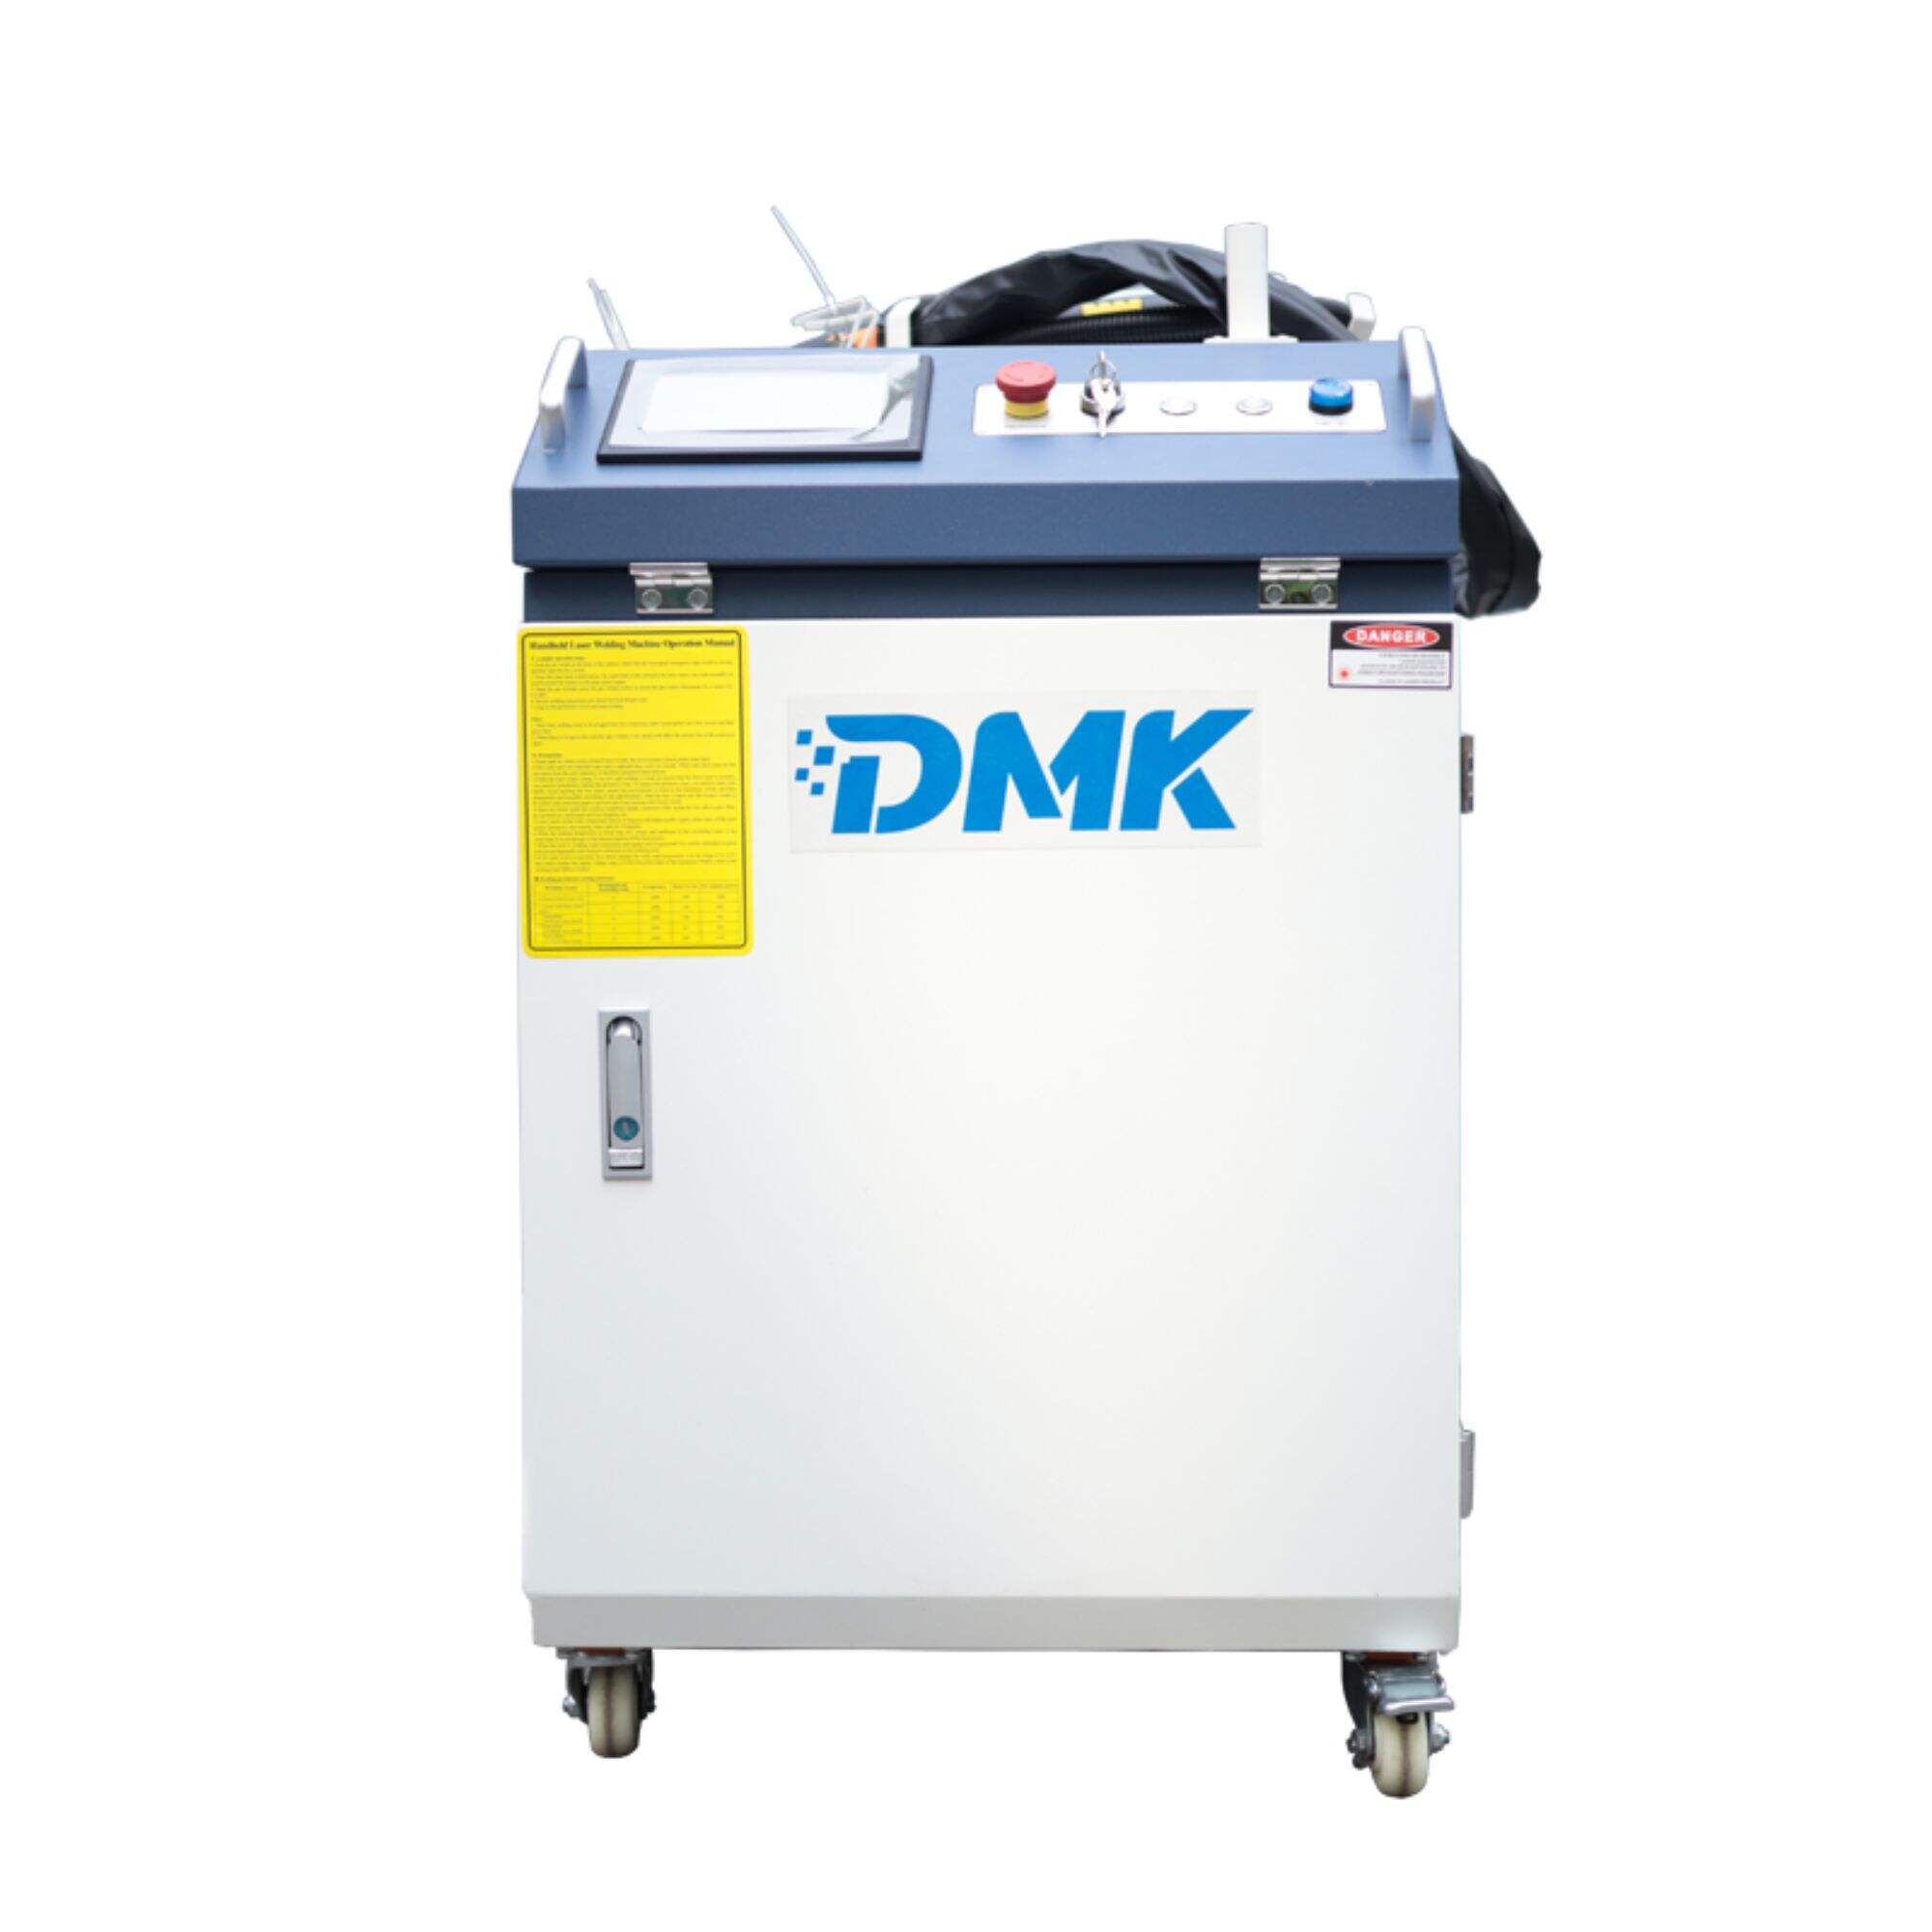 DMK ハンドヘルドポータブル MAX Raycus ファイバーレーザー溶接機スポット溶接